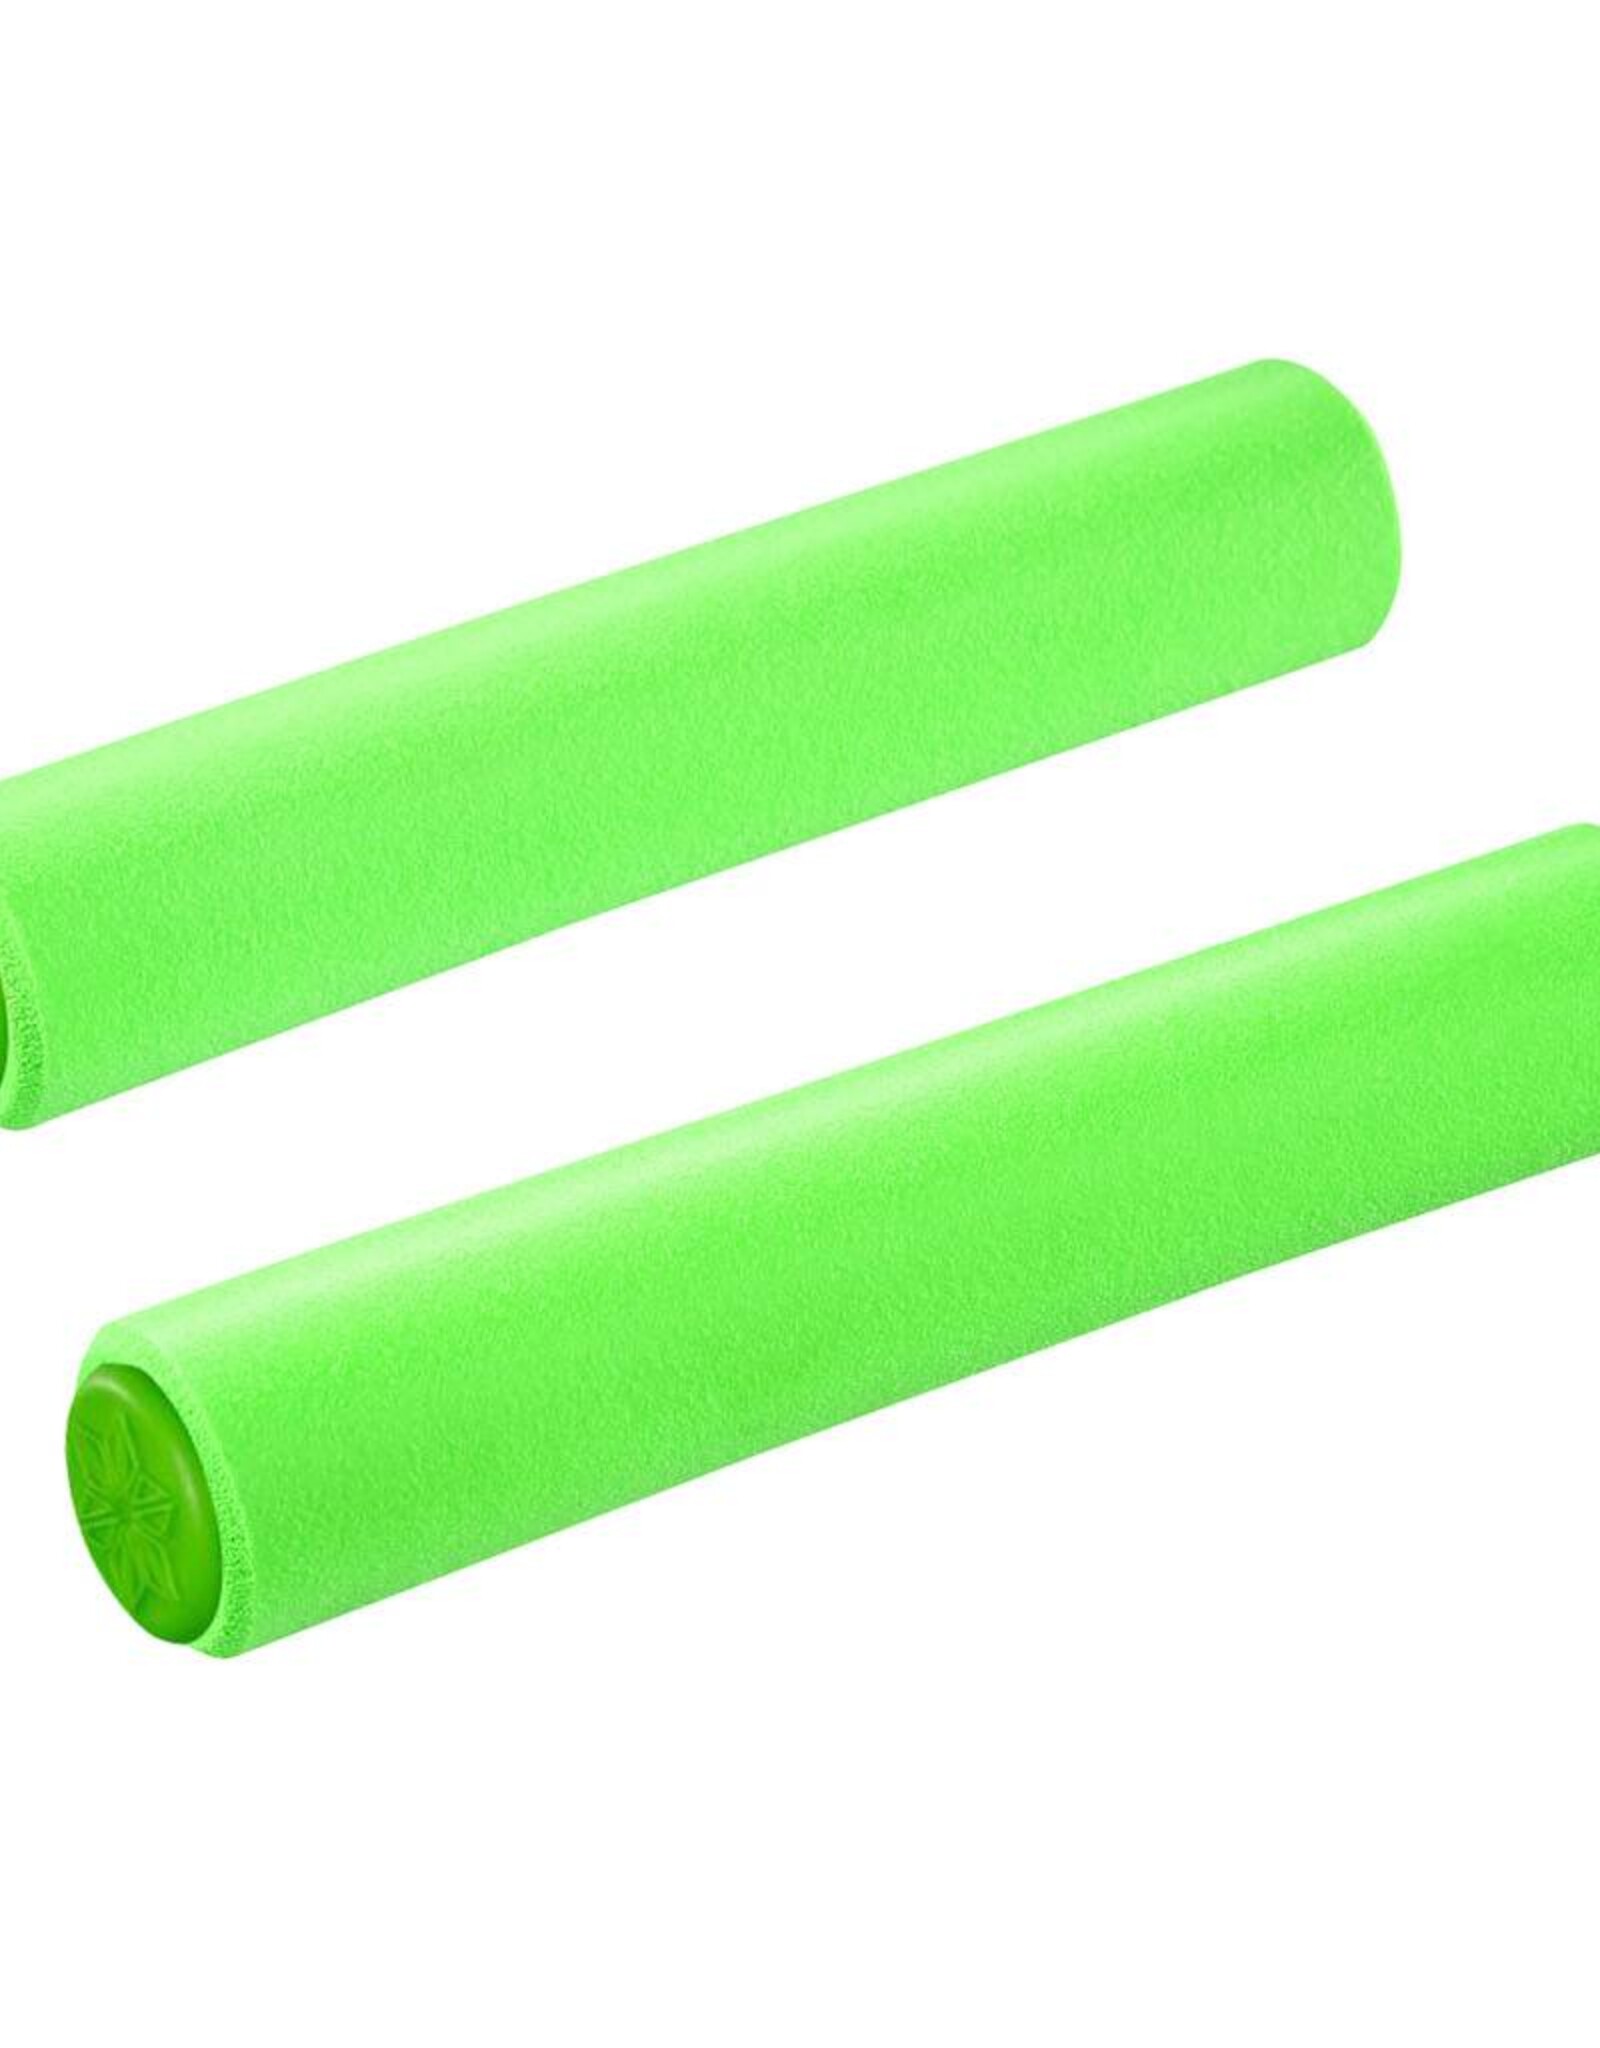 Supacaz Siliconez - Neon Green XL